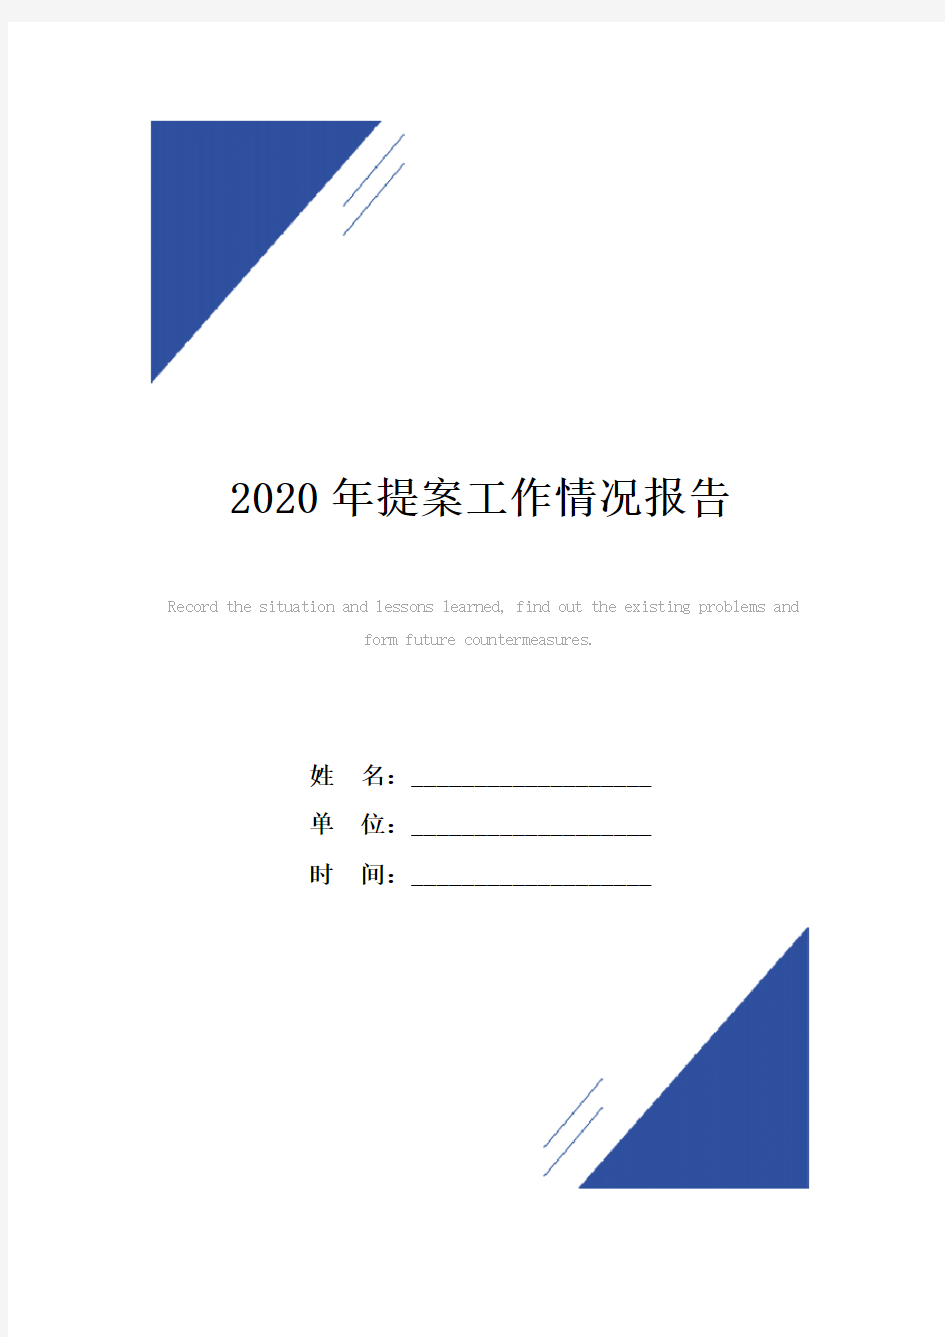 2020年提案工作情况报告范本